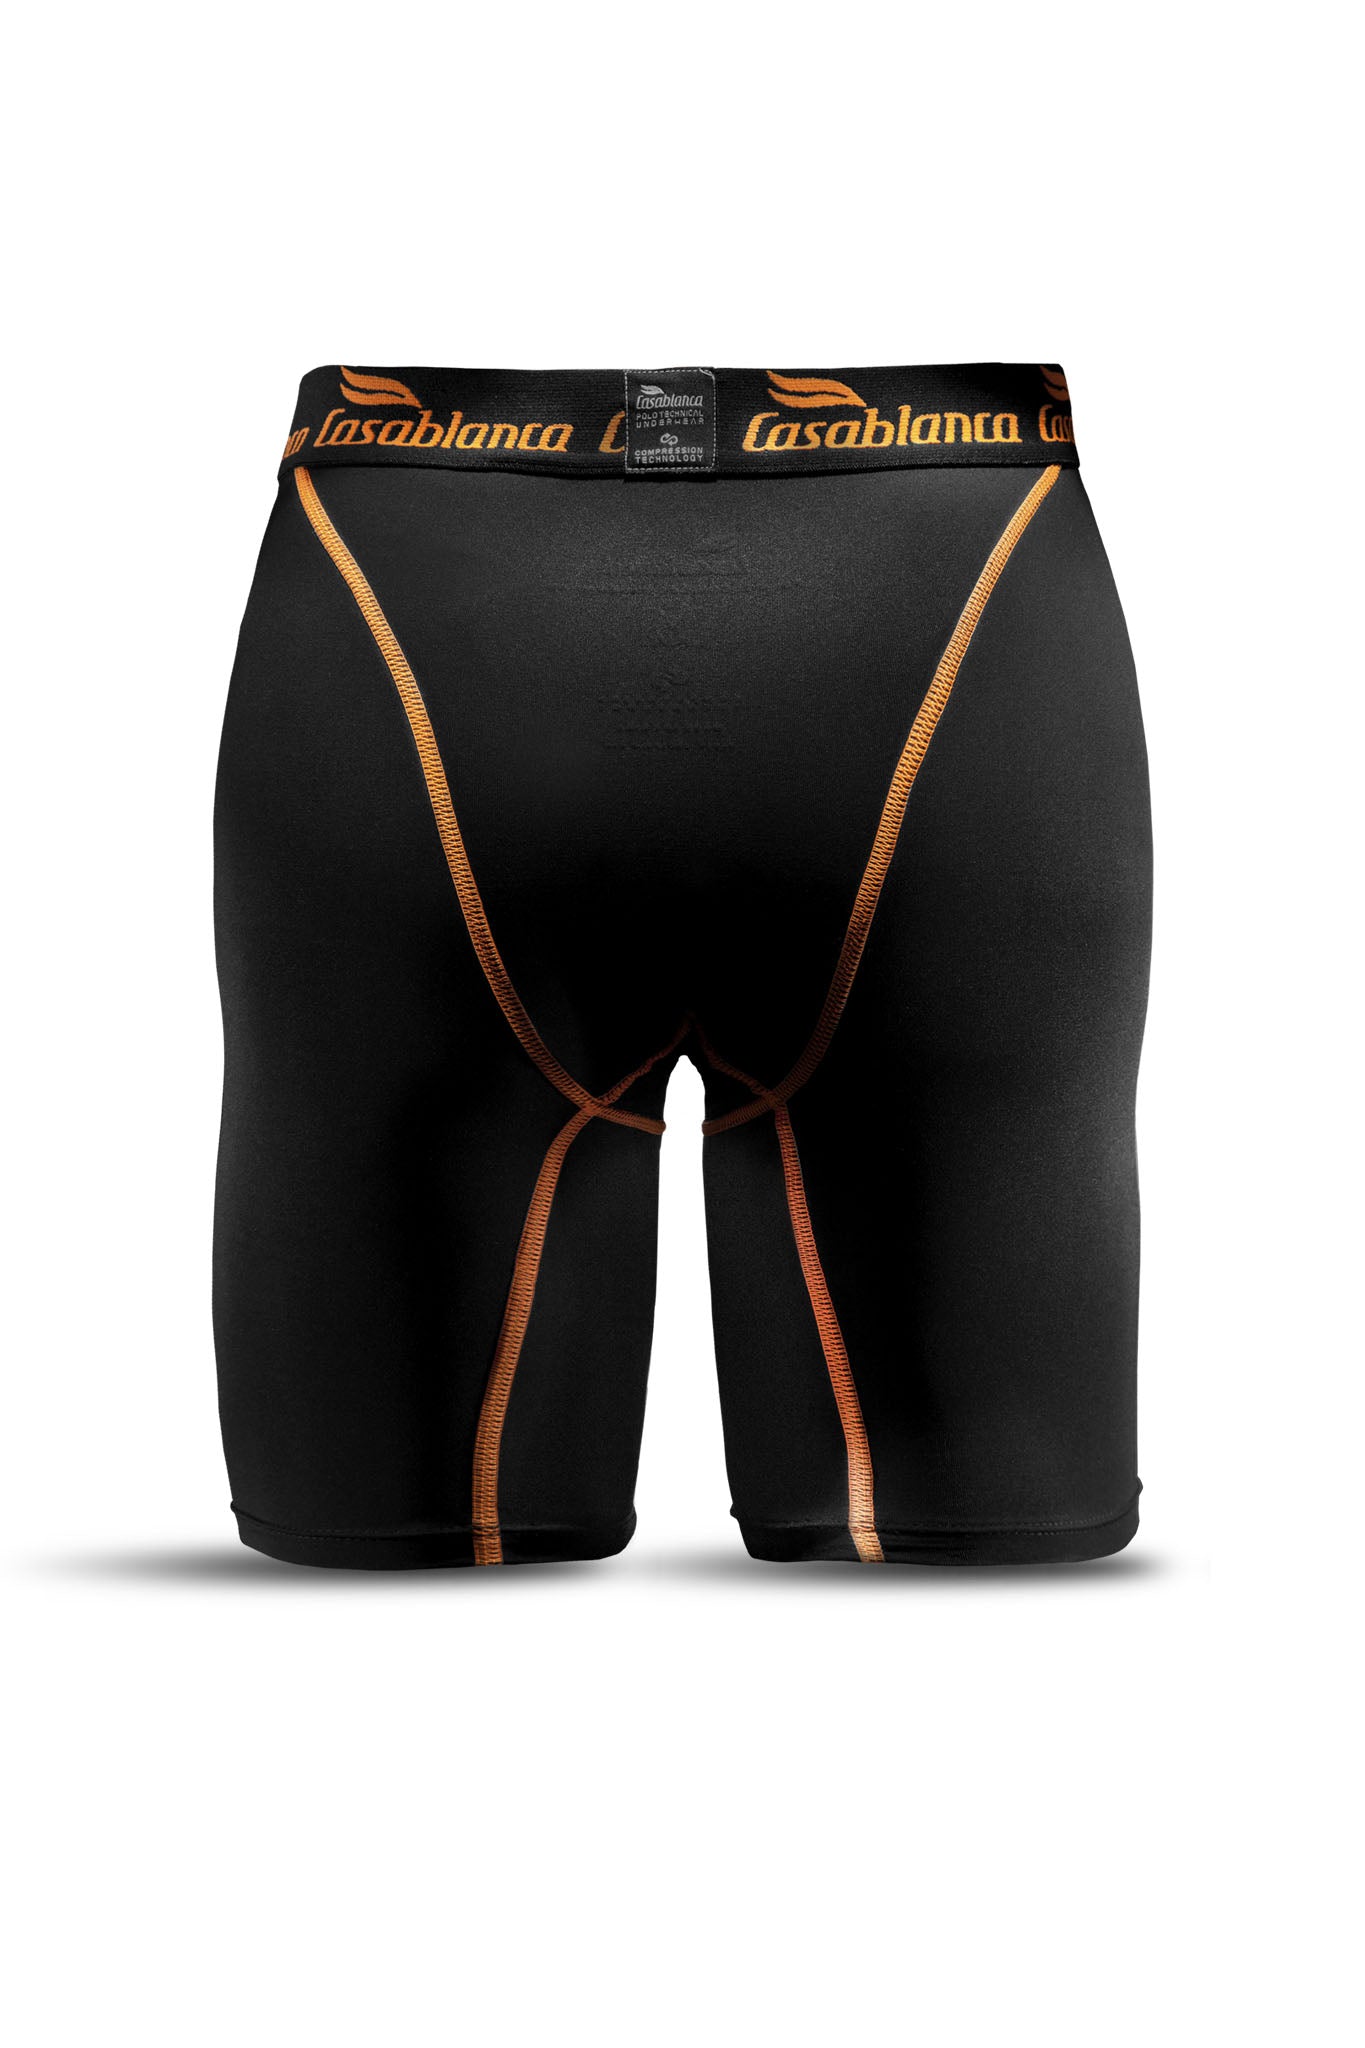 Technical Polo Underwear - casablanca